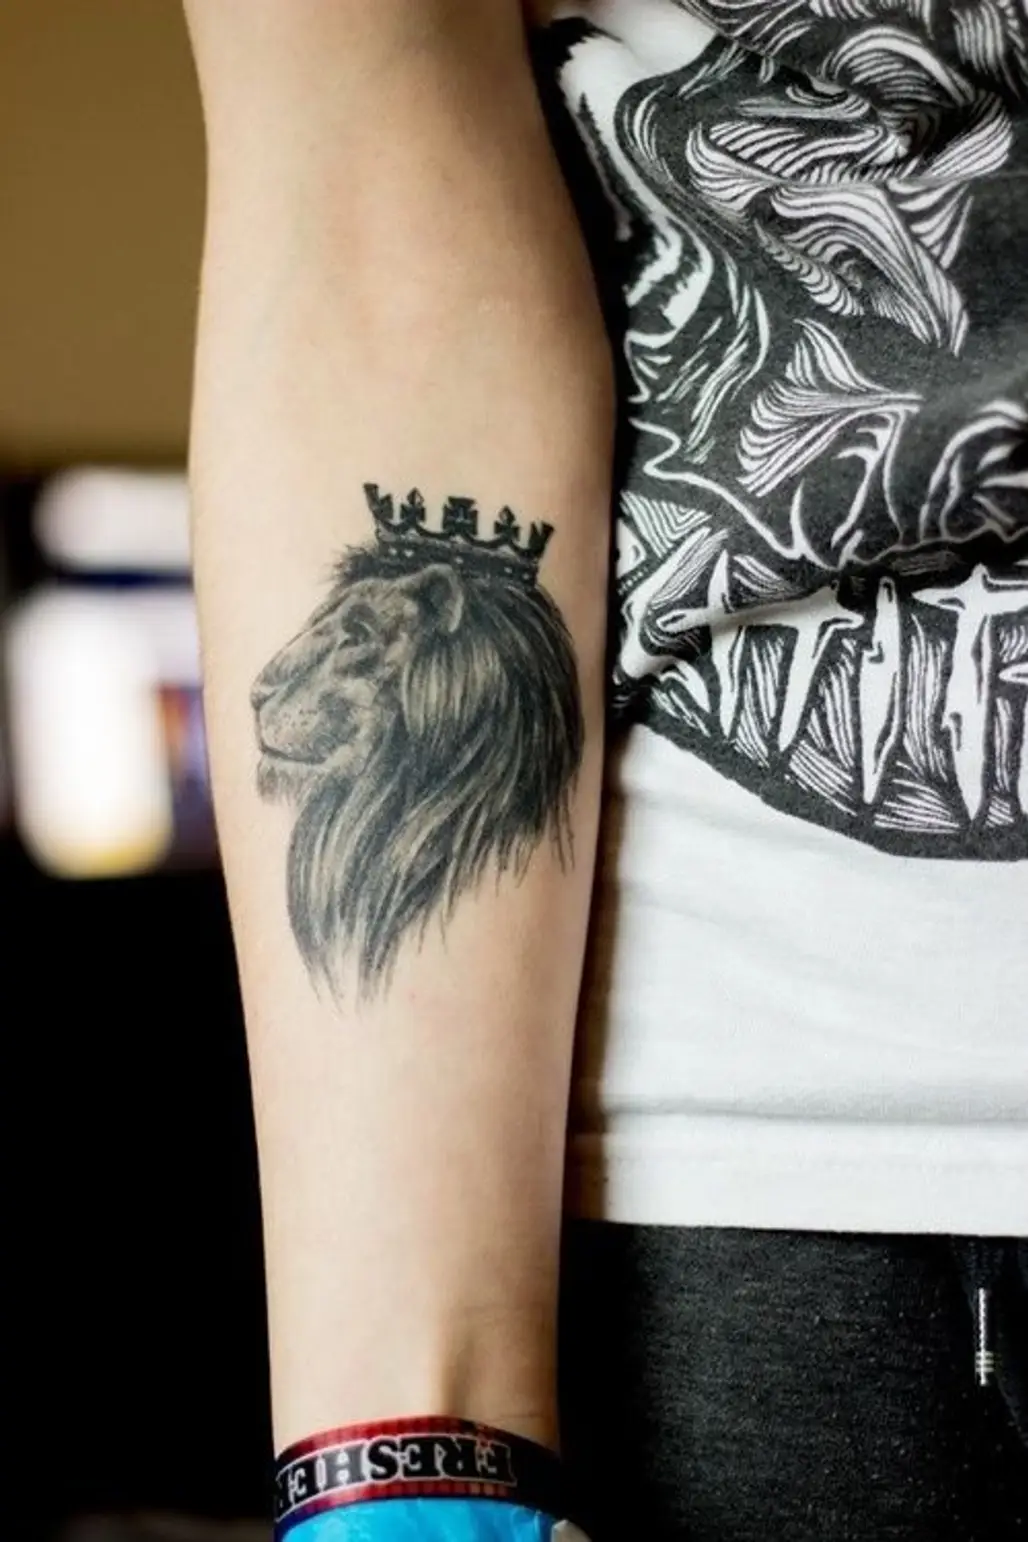 KD tattoo | Tattoos, Art tattoo, Jesus fish tattoo